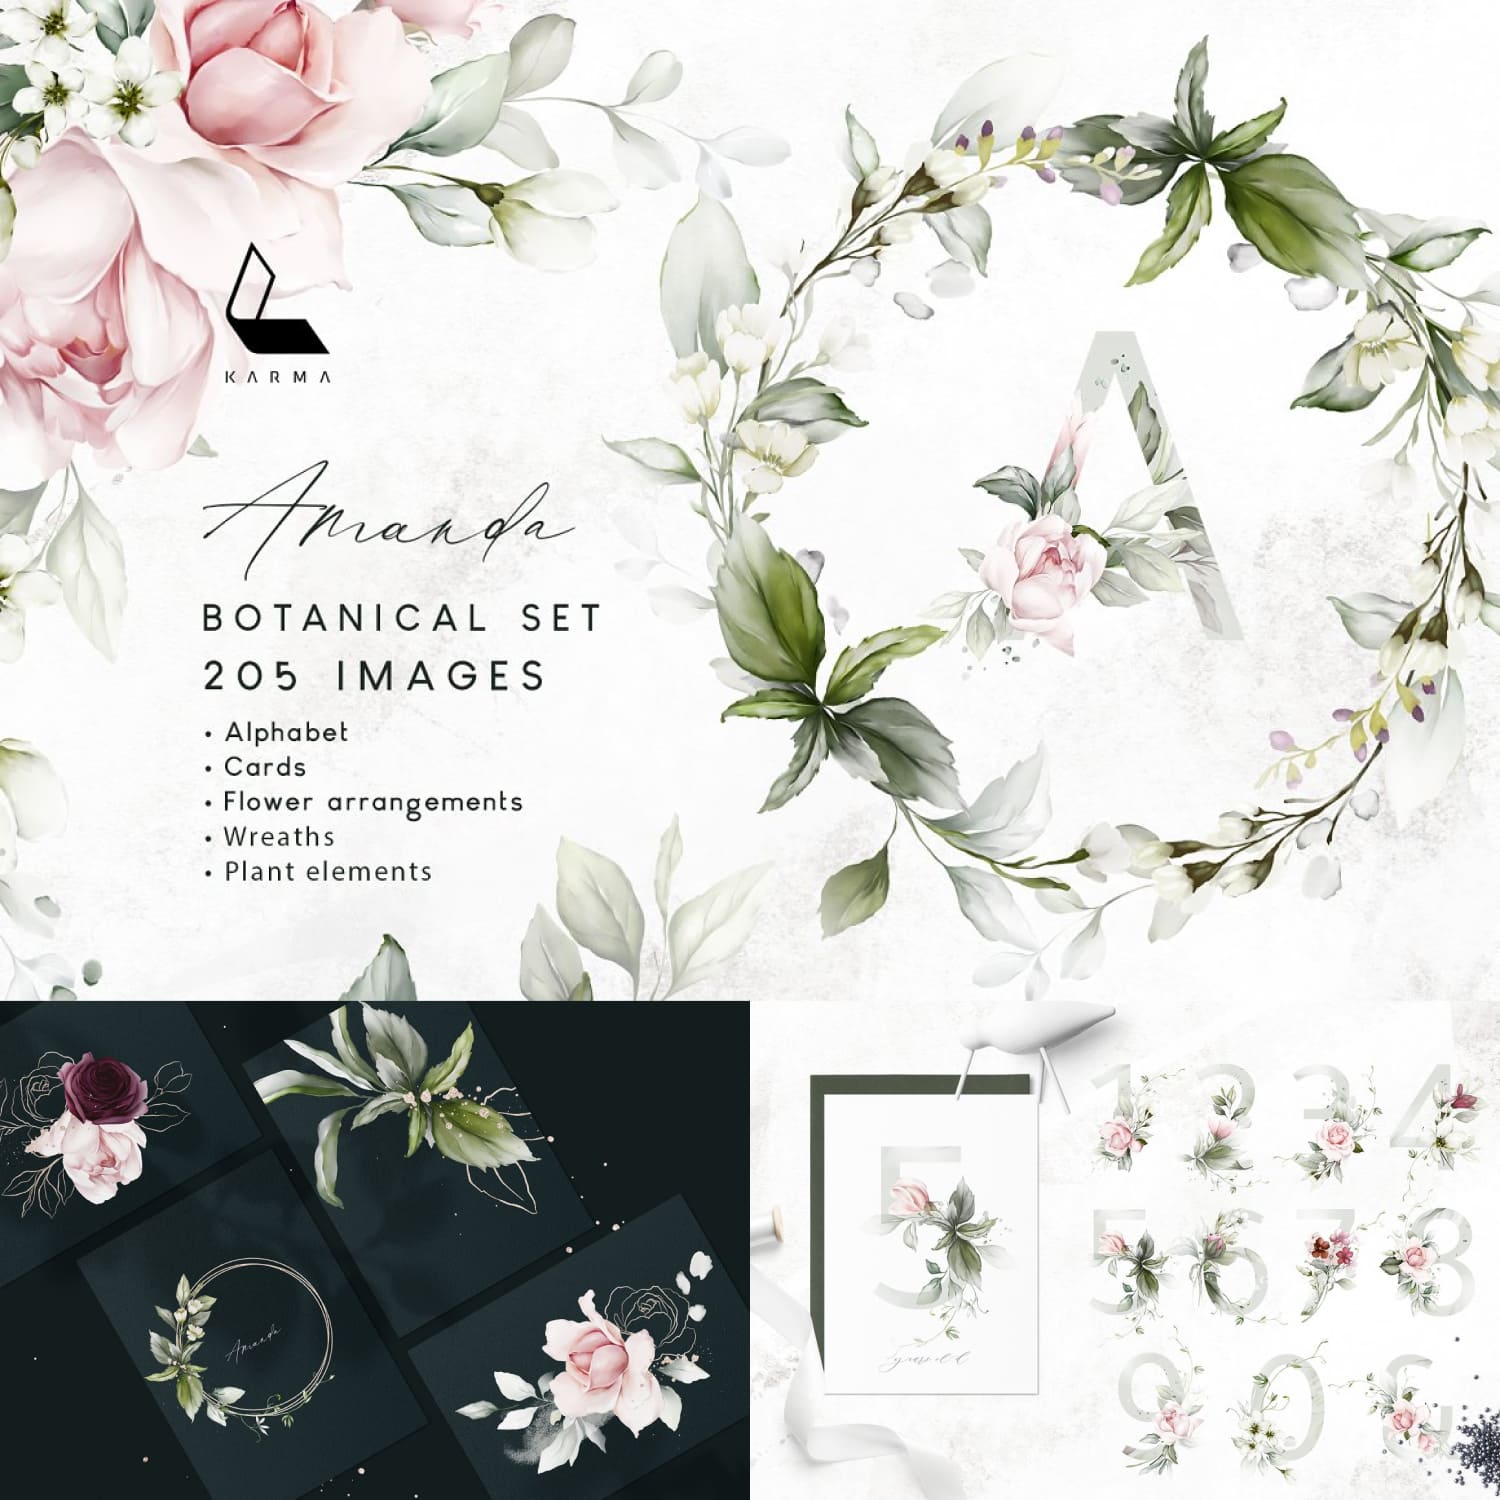 Amanda | Botanical set | 205 images.